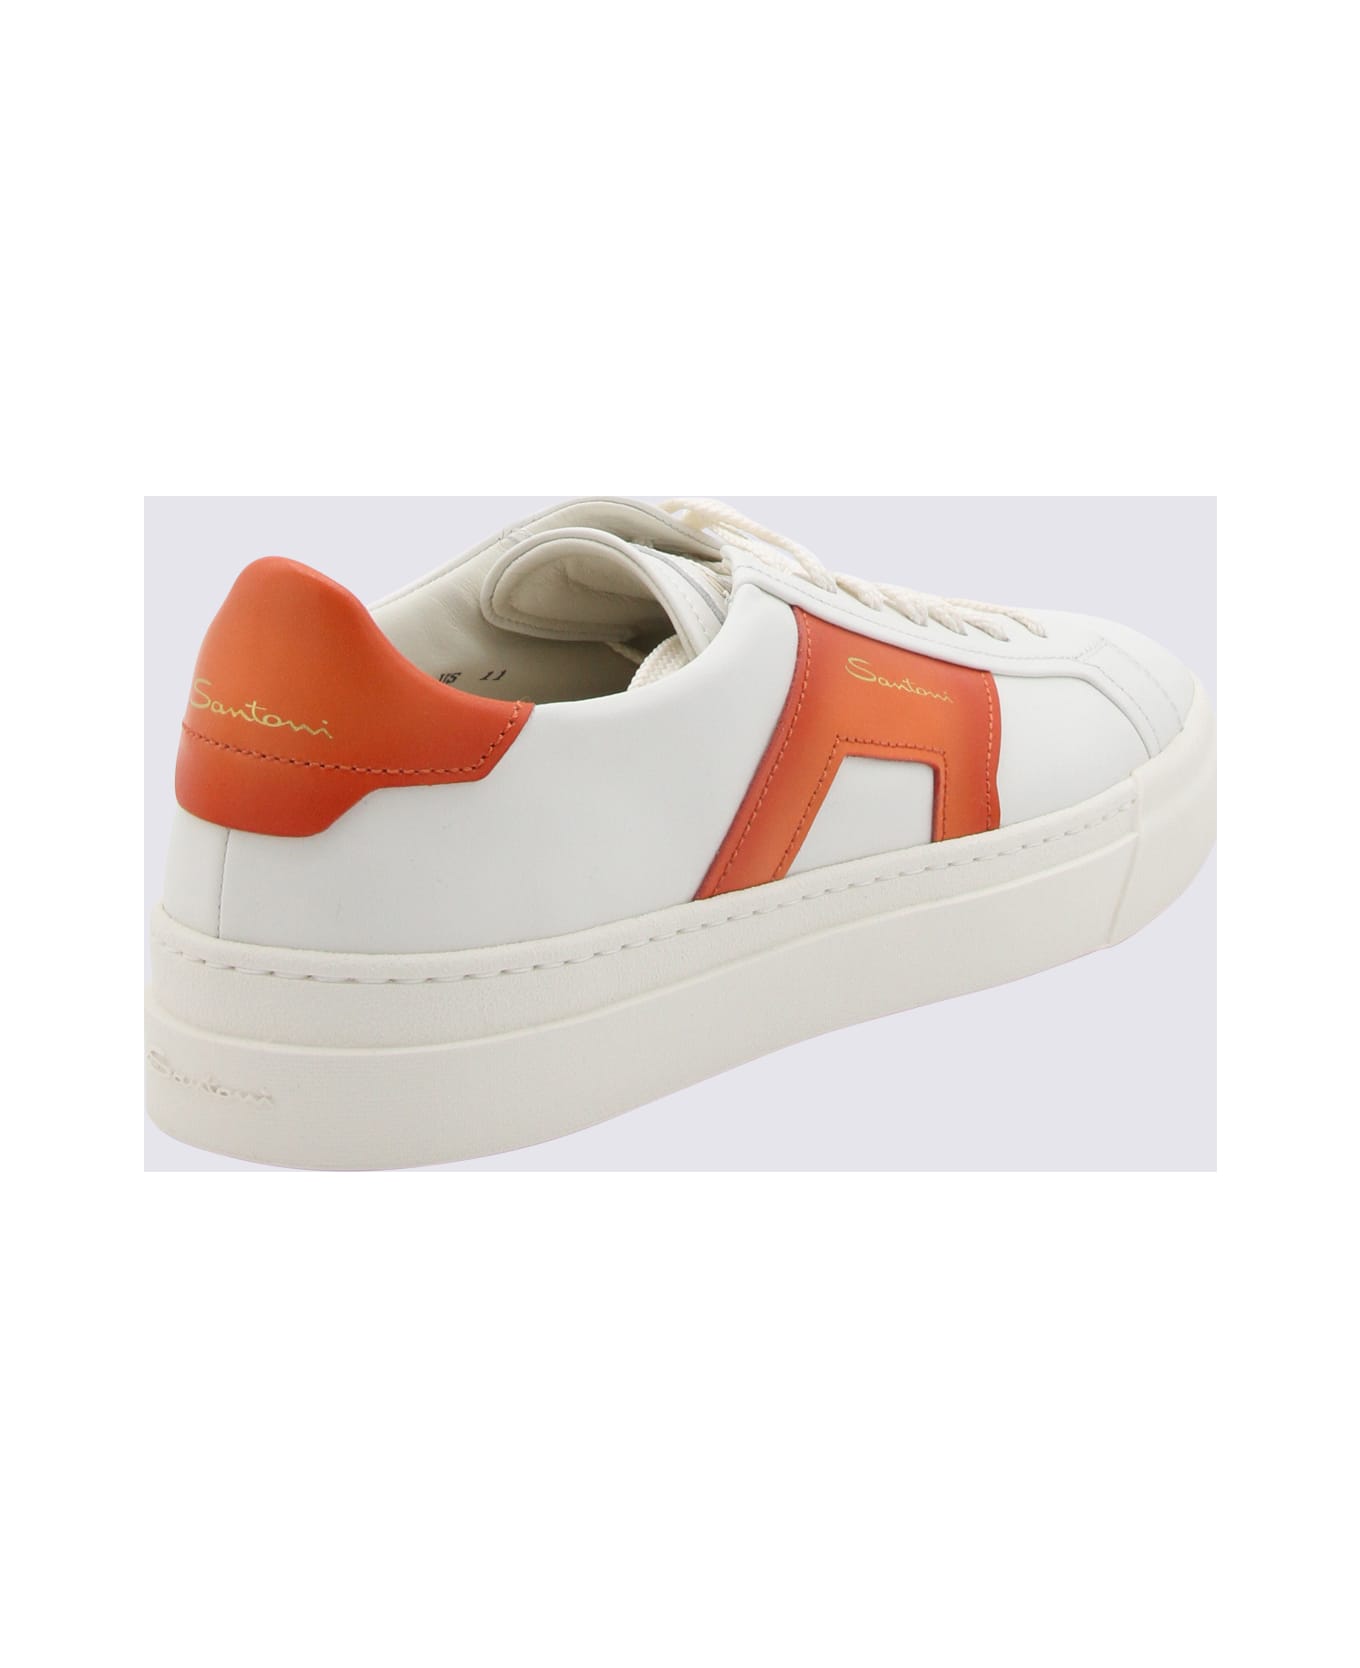 Santoni White And Orange Leather Sneakers - WHITE-ORANGE